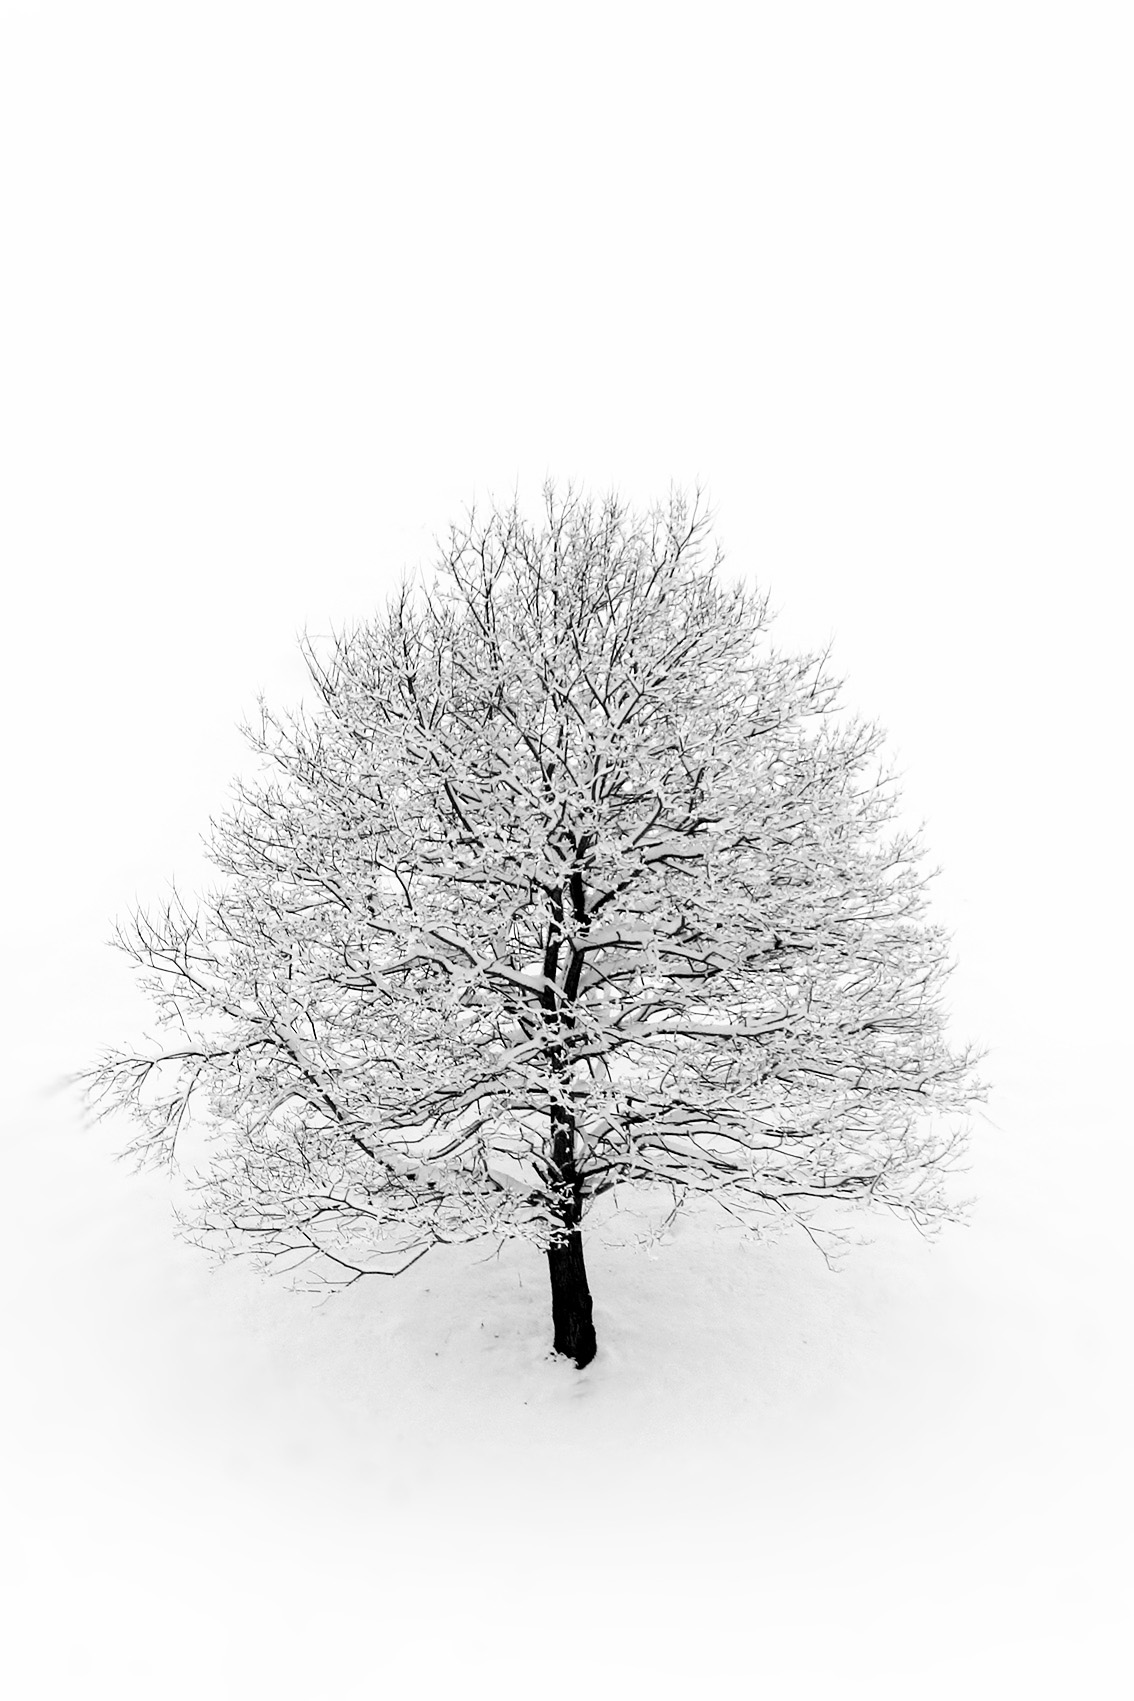 Définition de la photographie par Muriel Joly. photo épurée en noir et blanc